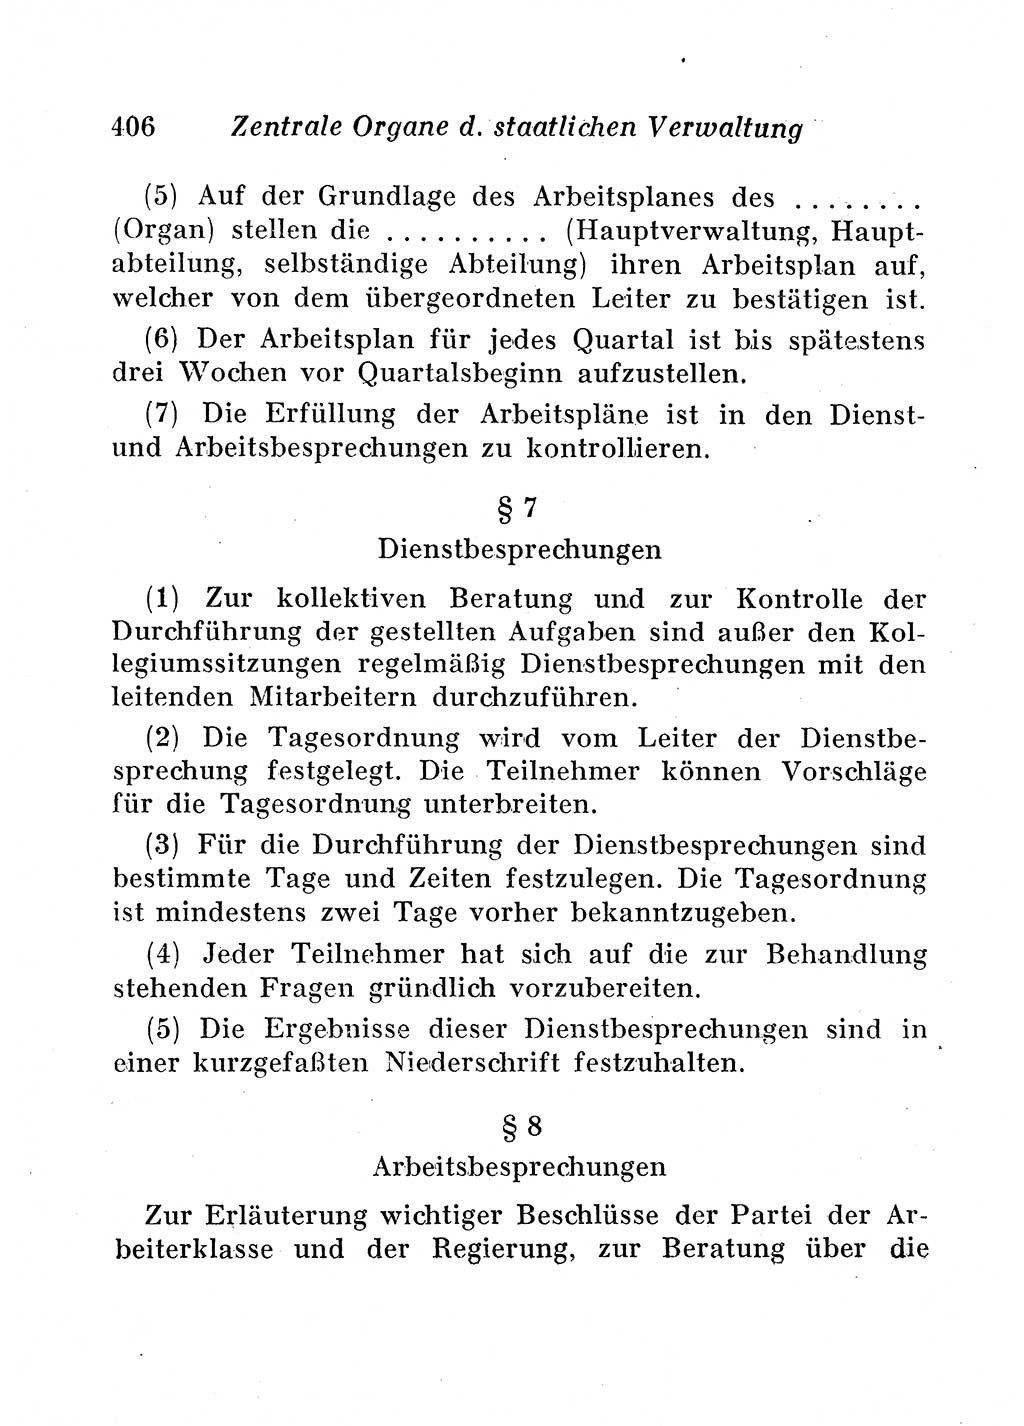 Staats- und verwaltungsrechtliche Gesetze der Deutschen Demokratischen Republik (DDR) 1958, Seite 406 (StVerwR Ges. DDR 1958, S. 406)